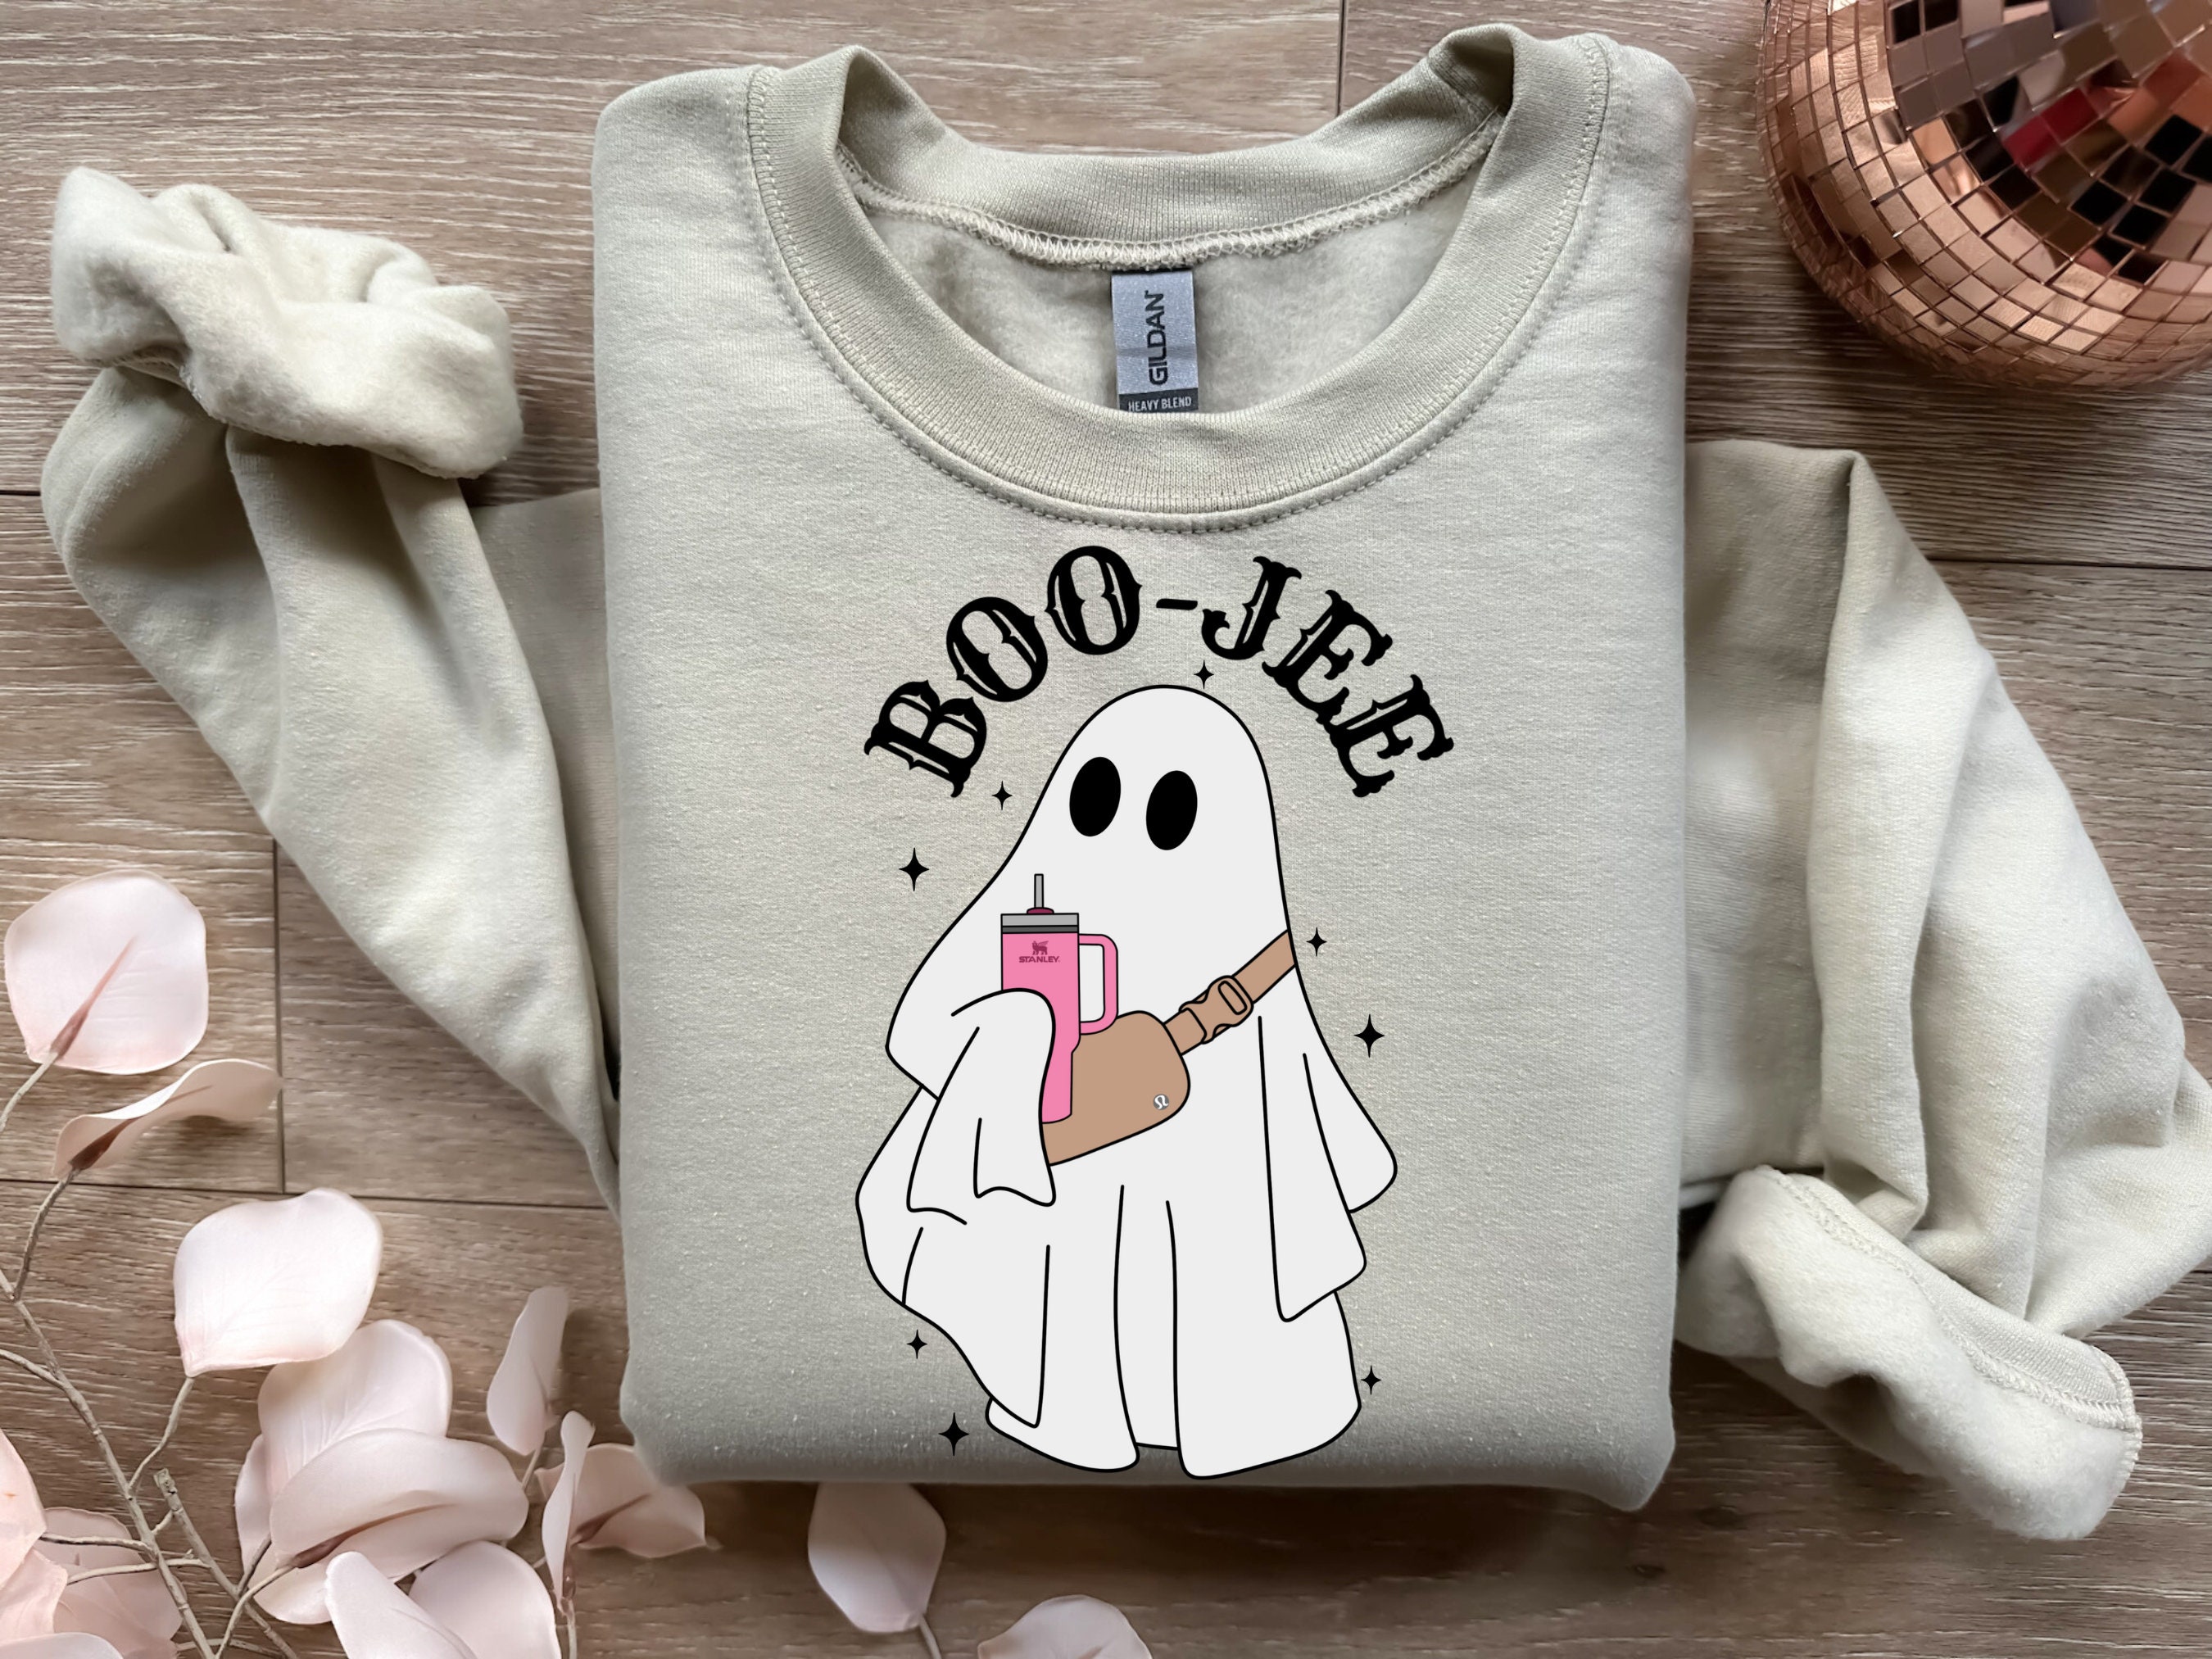 Boojee Ghost Sweatshirt Stanley Tumbler and Lulu Belt Bag 